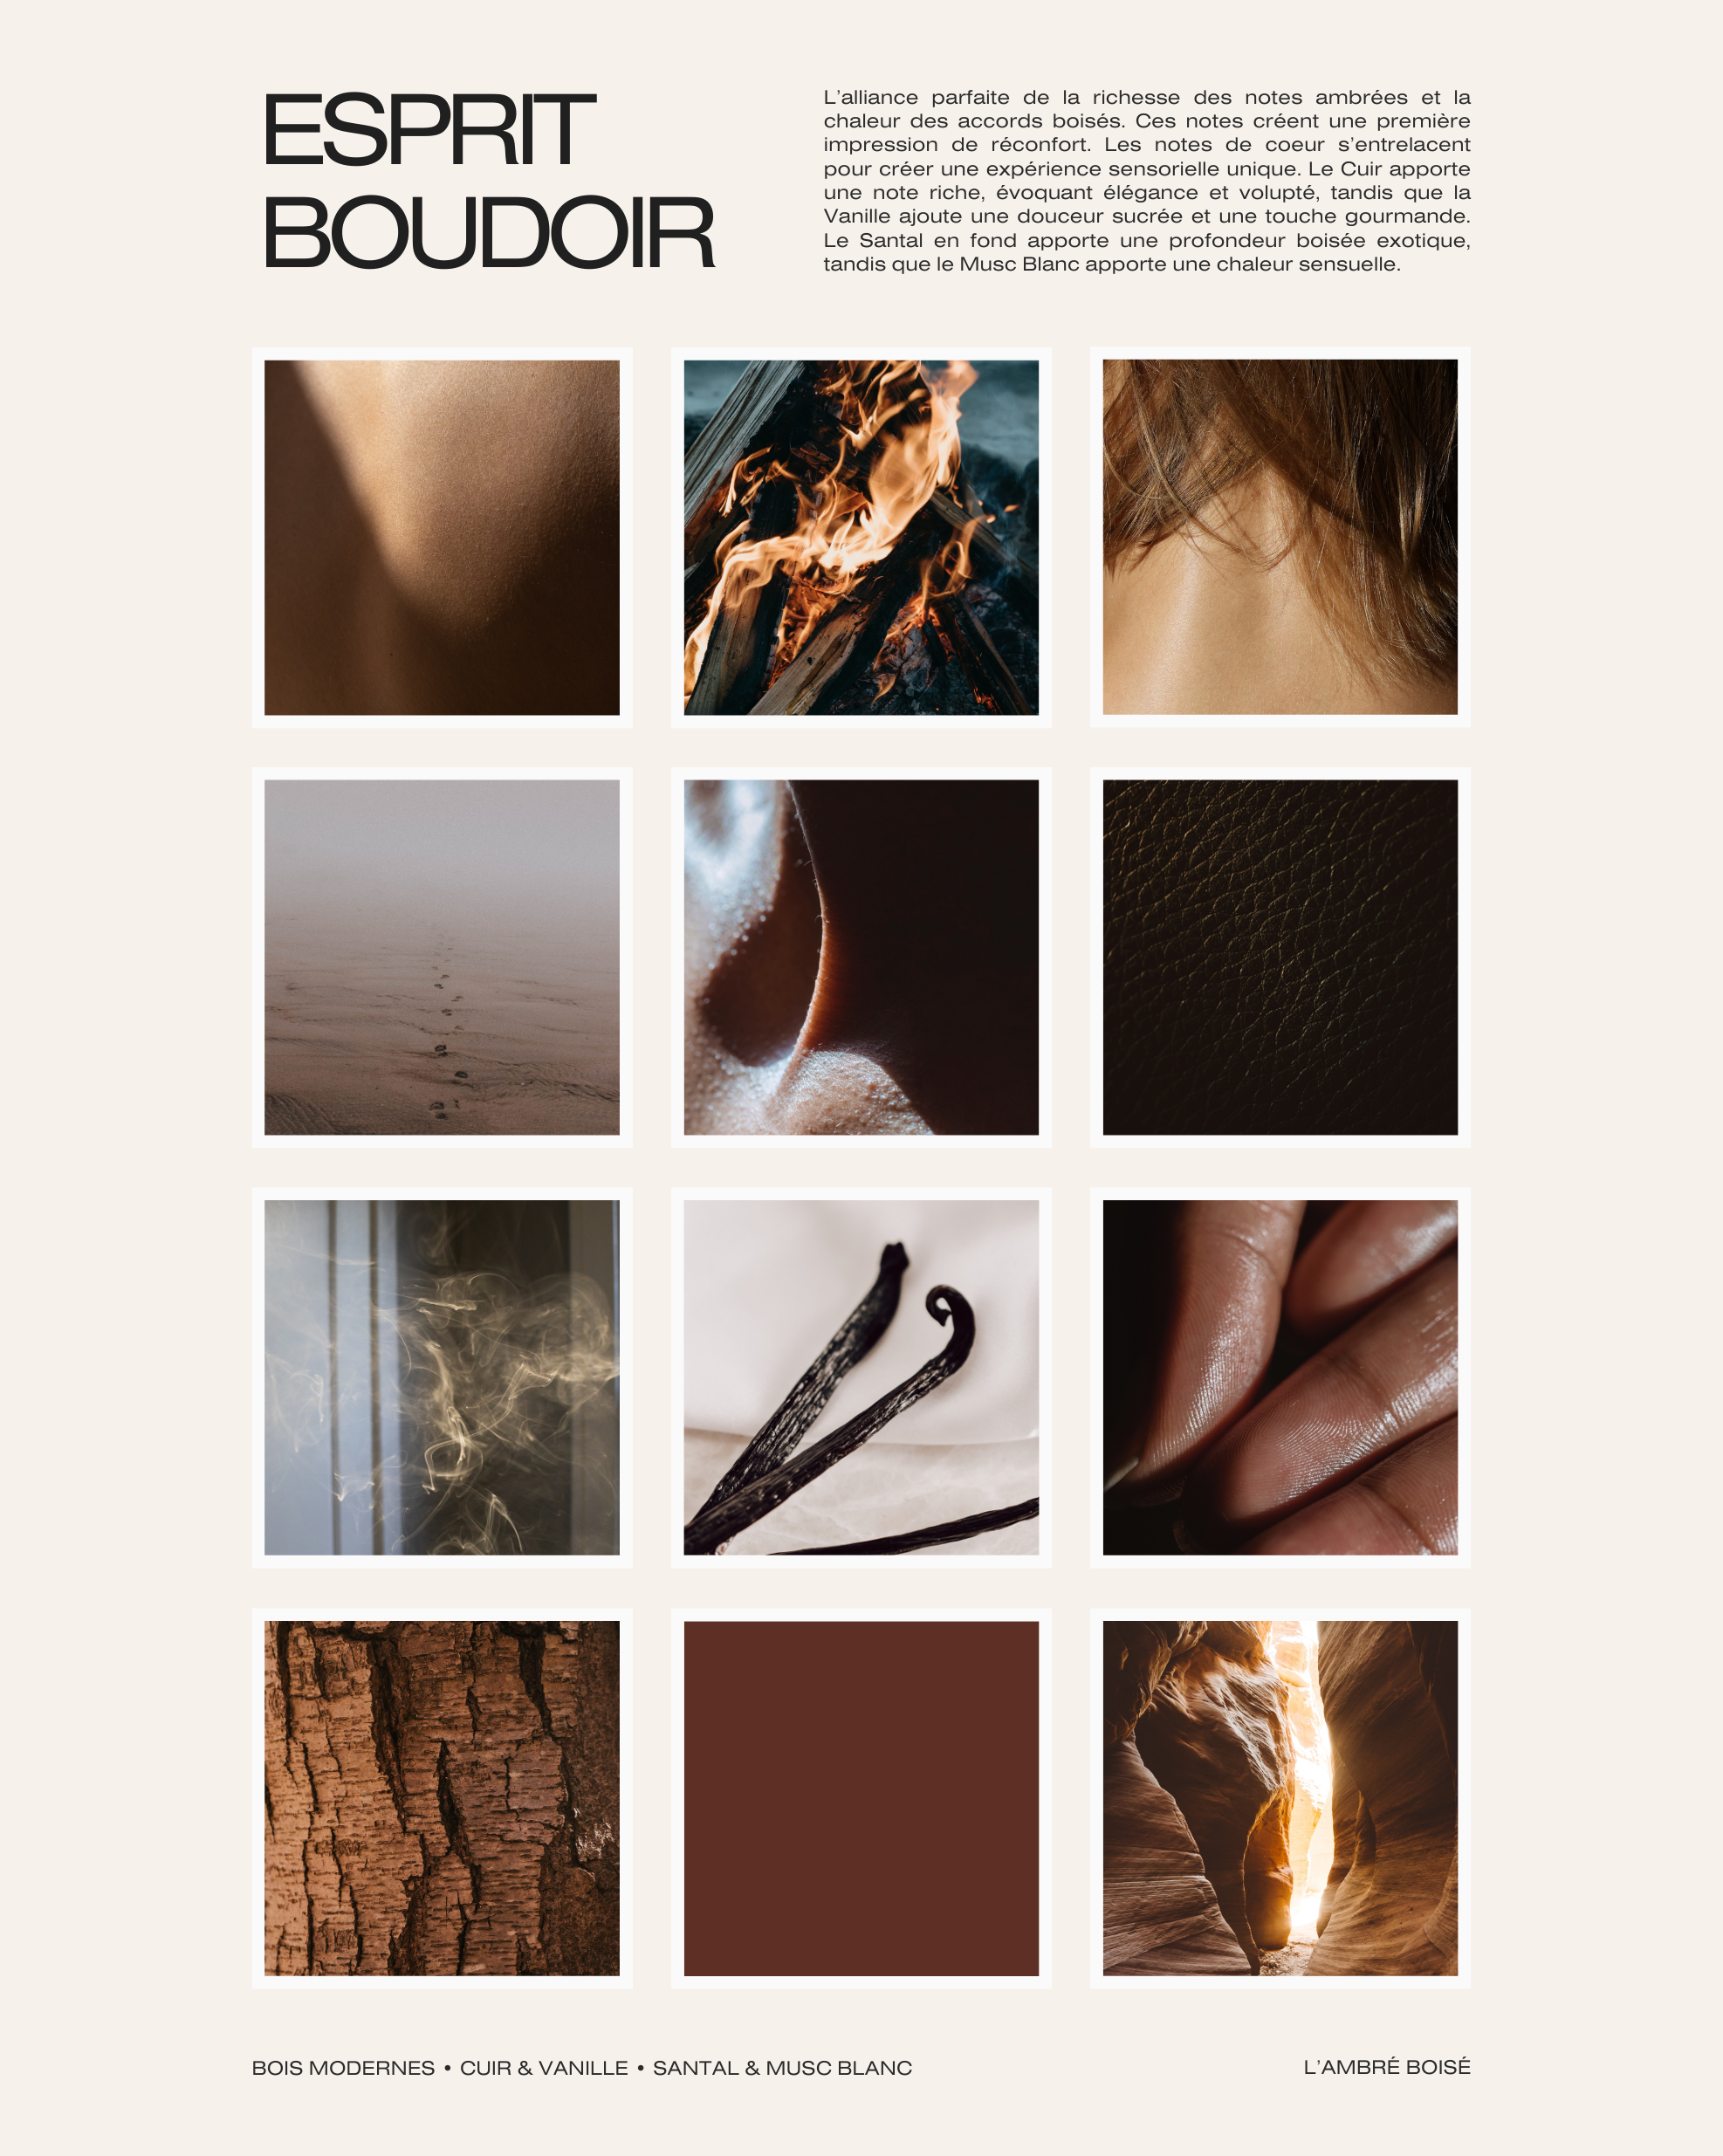 The signature box – Boudoir spirit